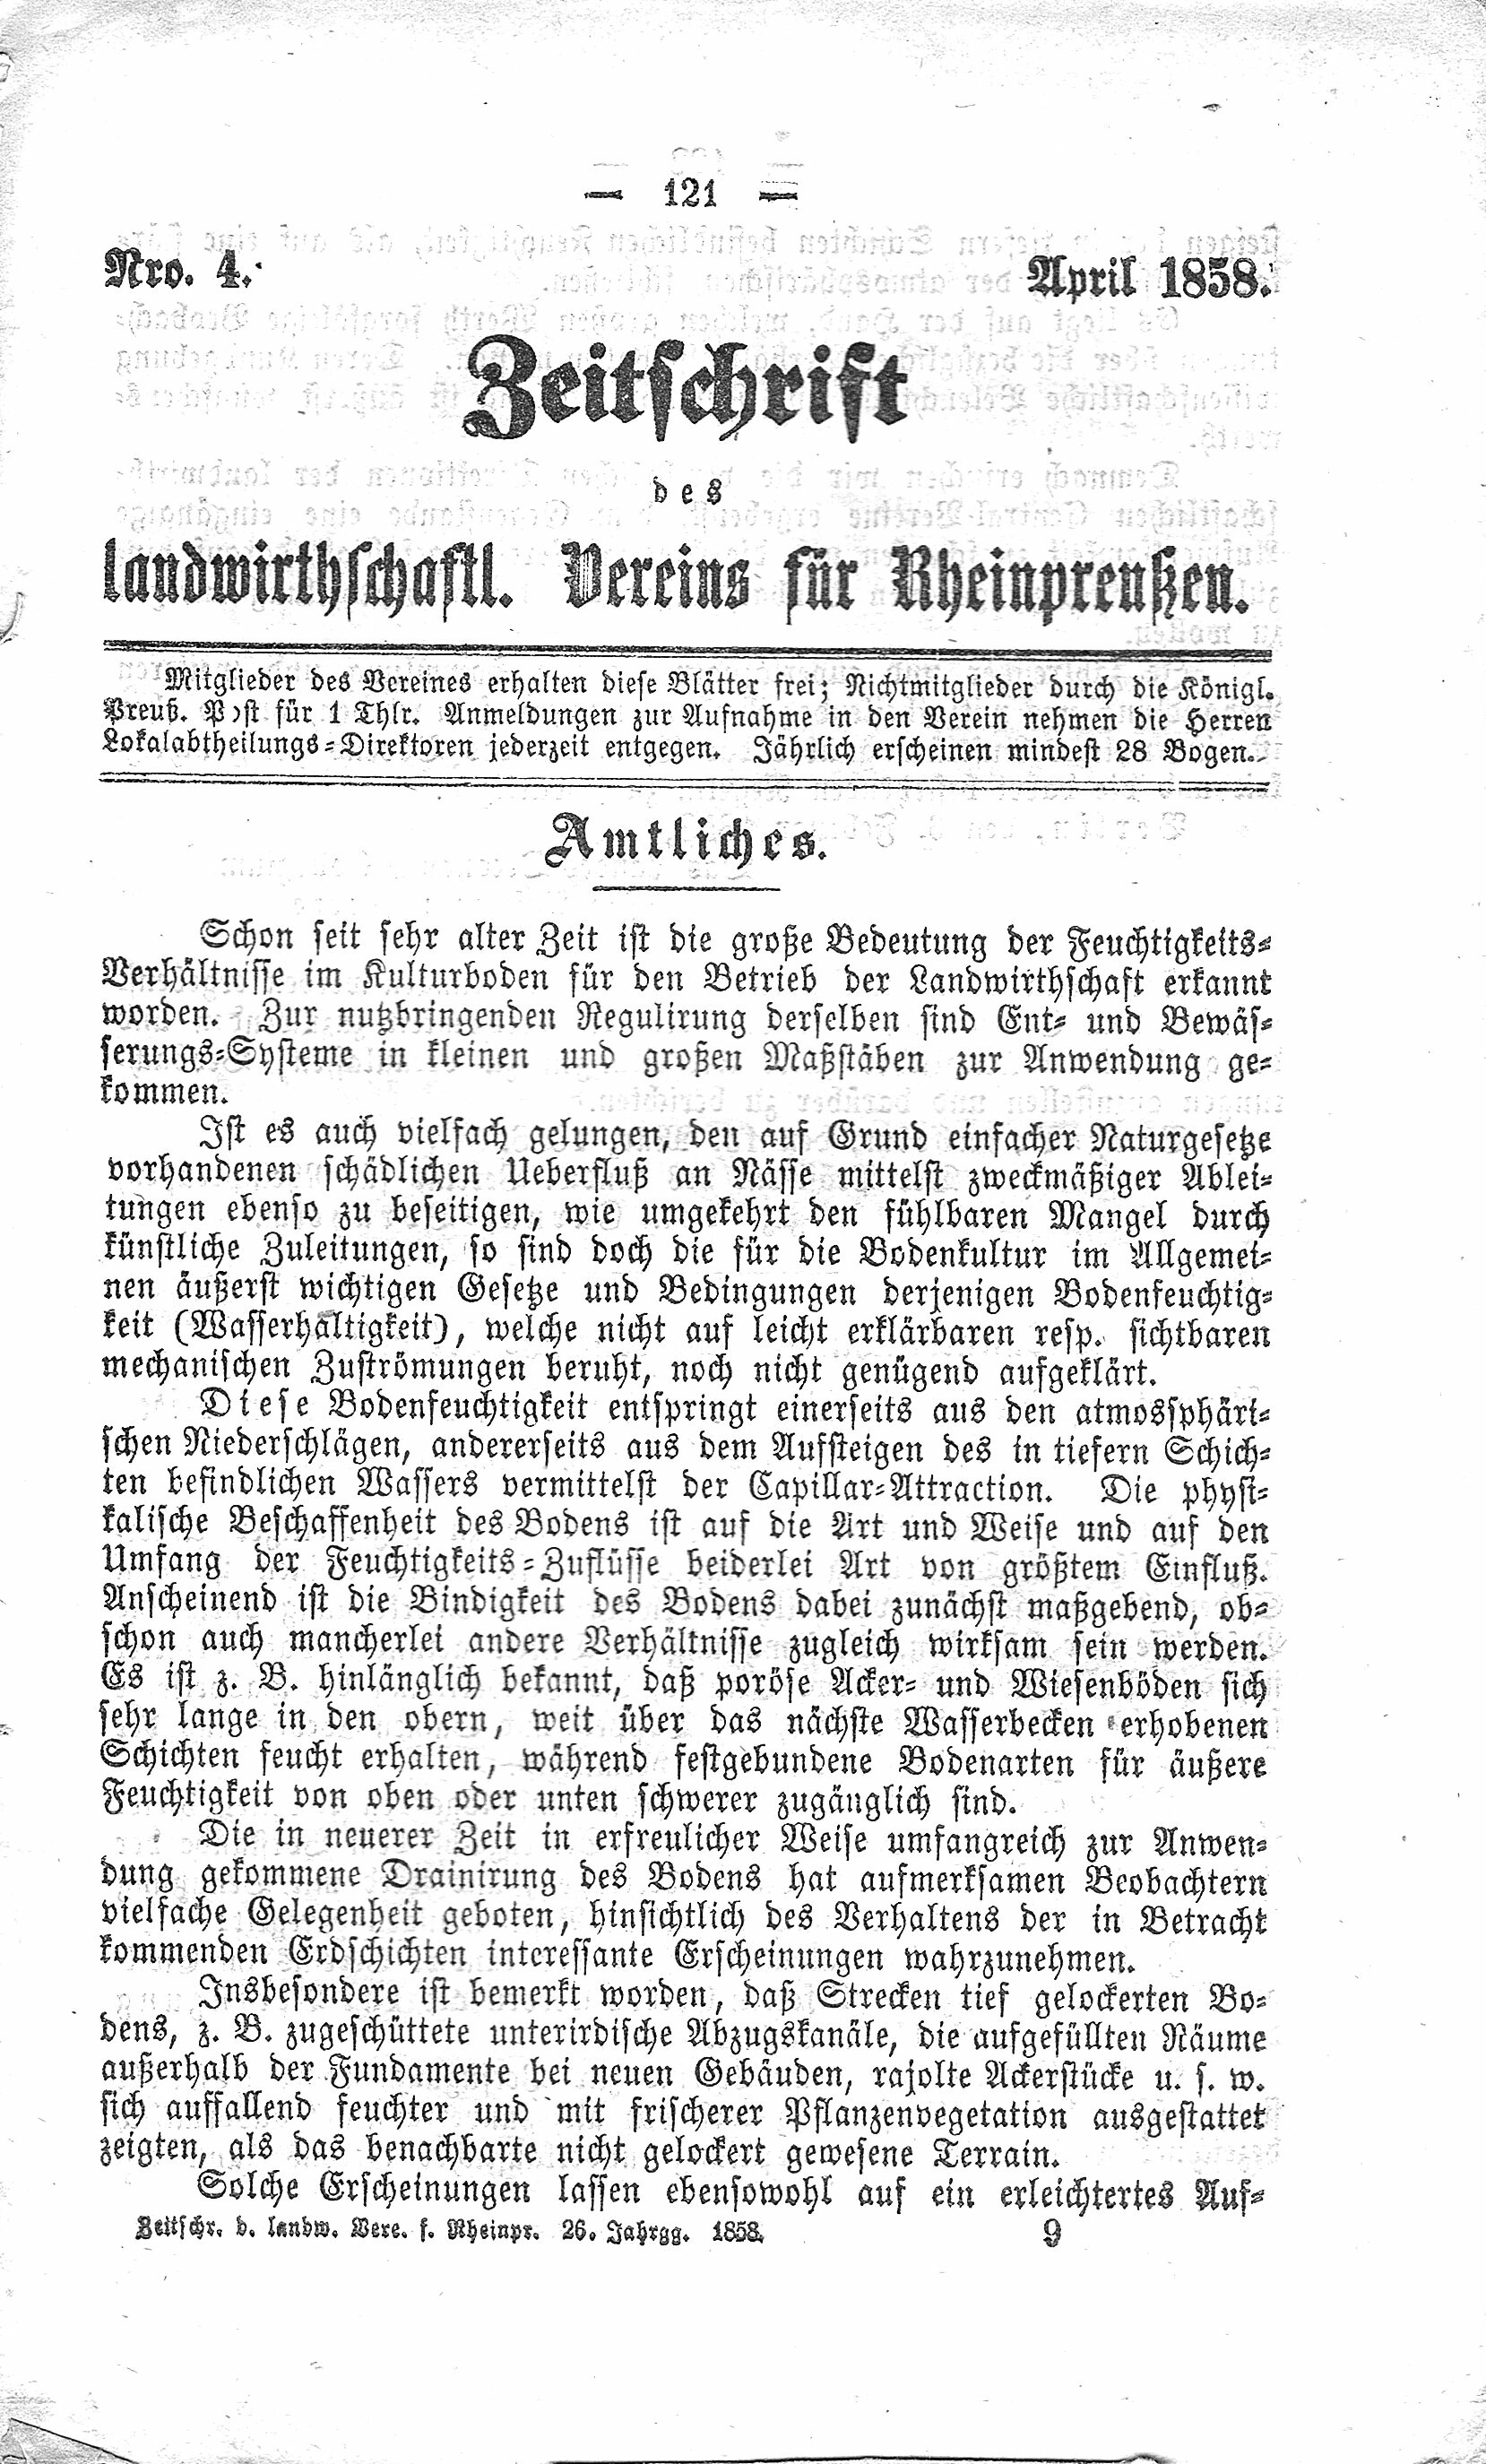 Zeitschrift des landwirtschaftlichen Vereins für Rheinpreußen April 1857 (Volkskunde- und Freilichtmuseum Roscheider Hof CC0)